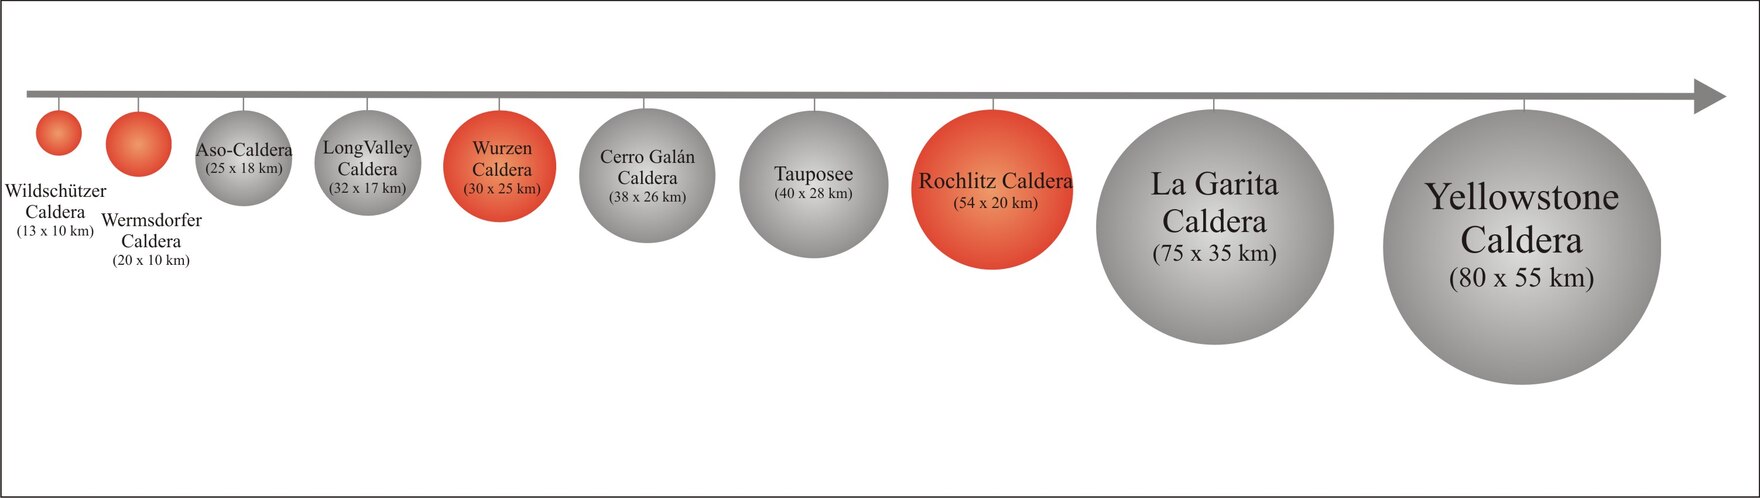 Das Bild zeigt einen schematischen Größenvergleich der Caldera des permischen Nordsächsischen Vulkanitkomplexes mit jenen der großen Supereruptionen des Känozoikums. Die Calderensysteme Nordsachsen sind farbig hervorgehoben.